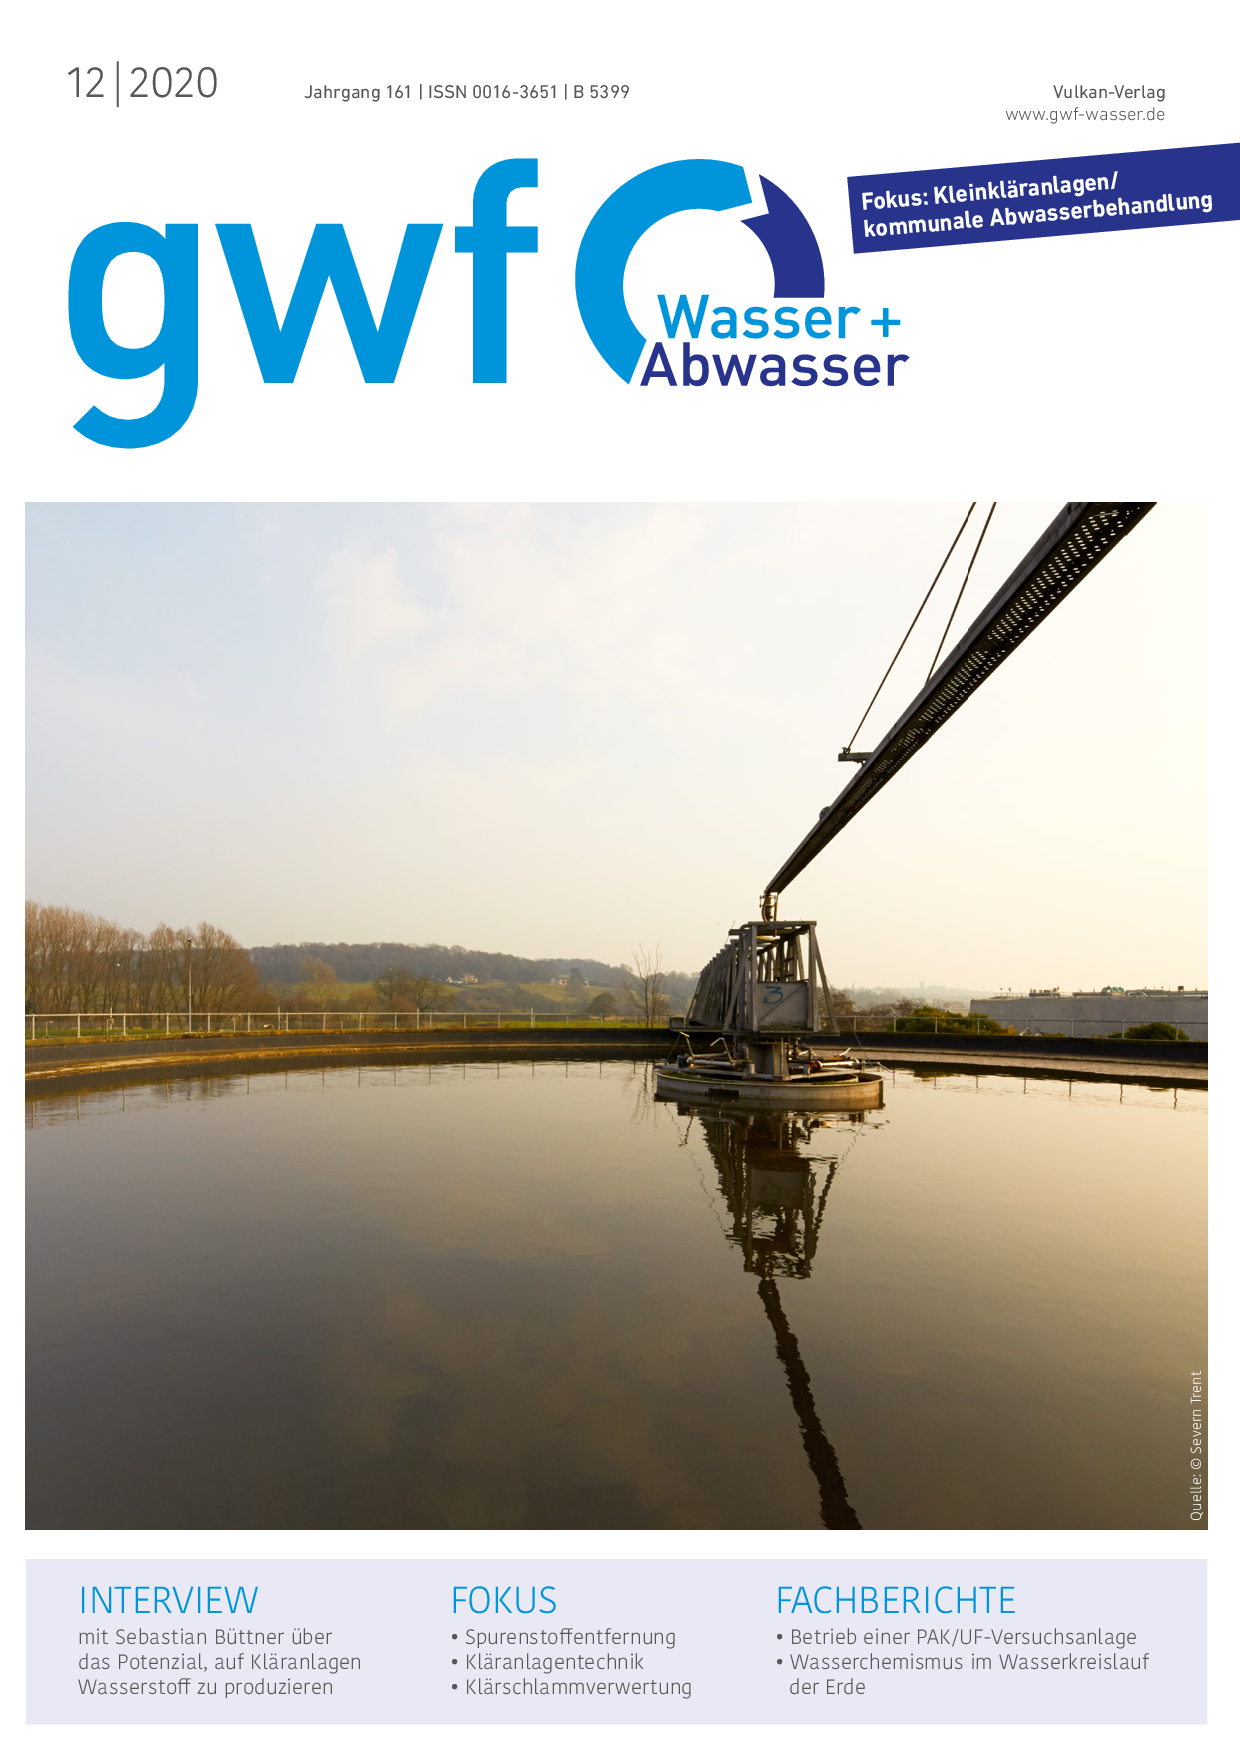 gwf - Wasser|Abwasser - 12 2020